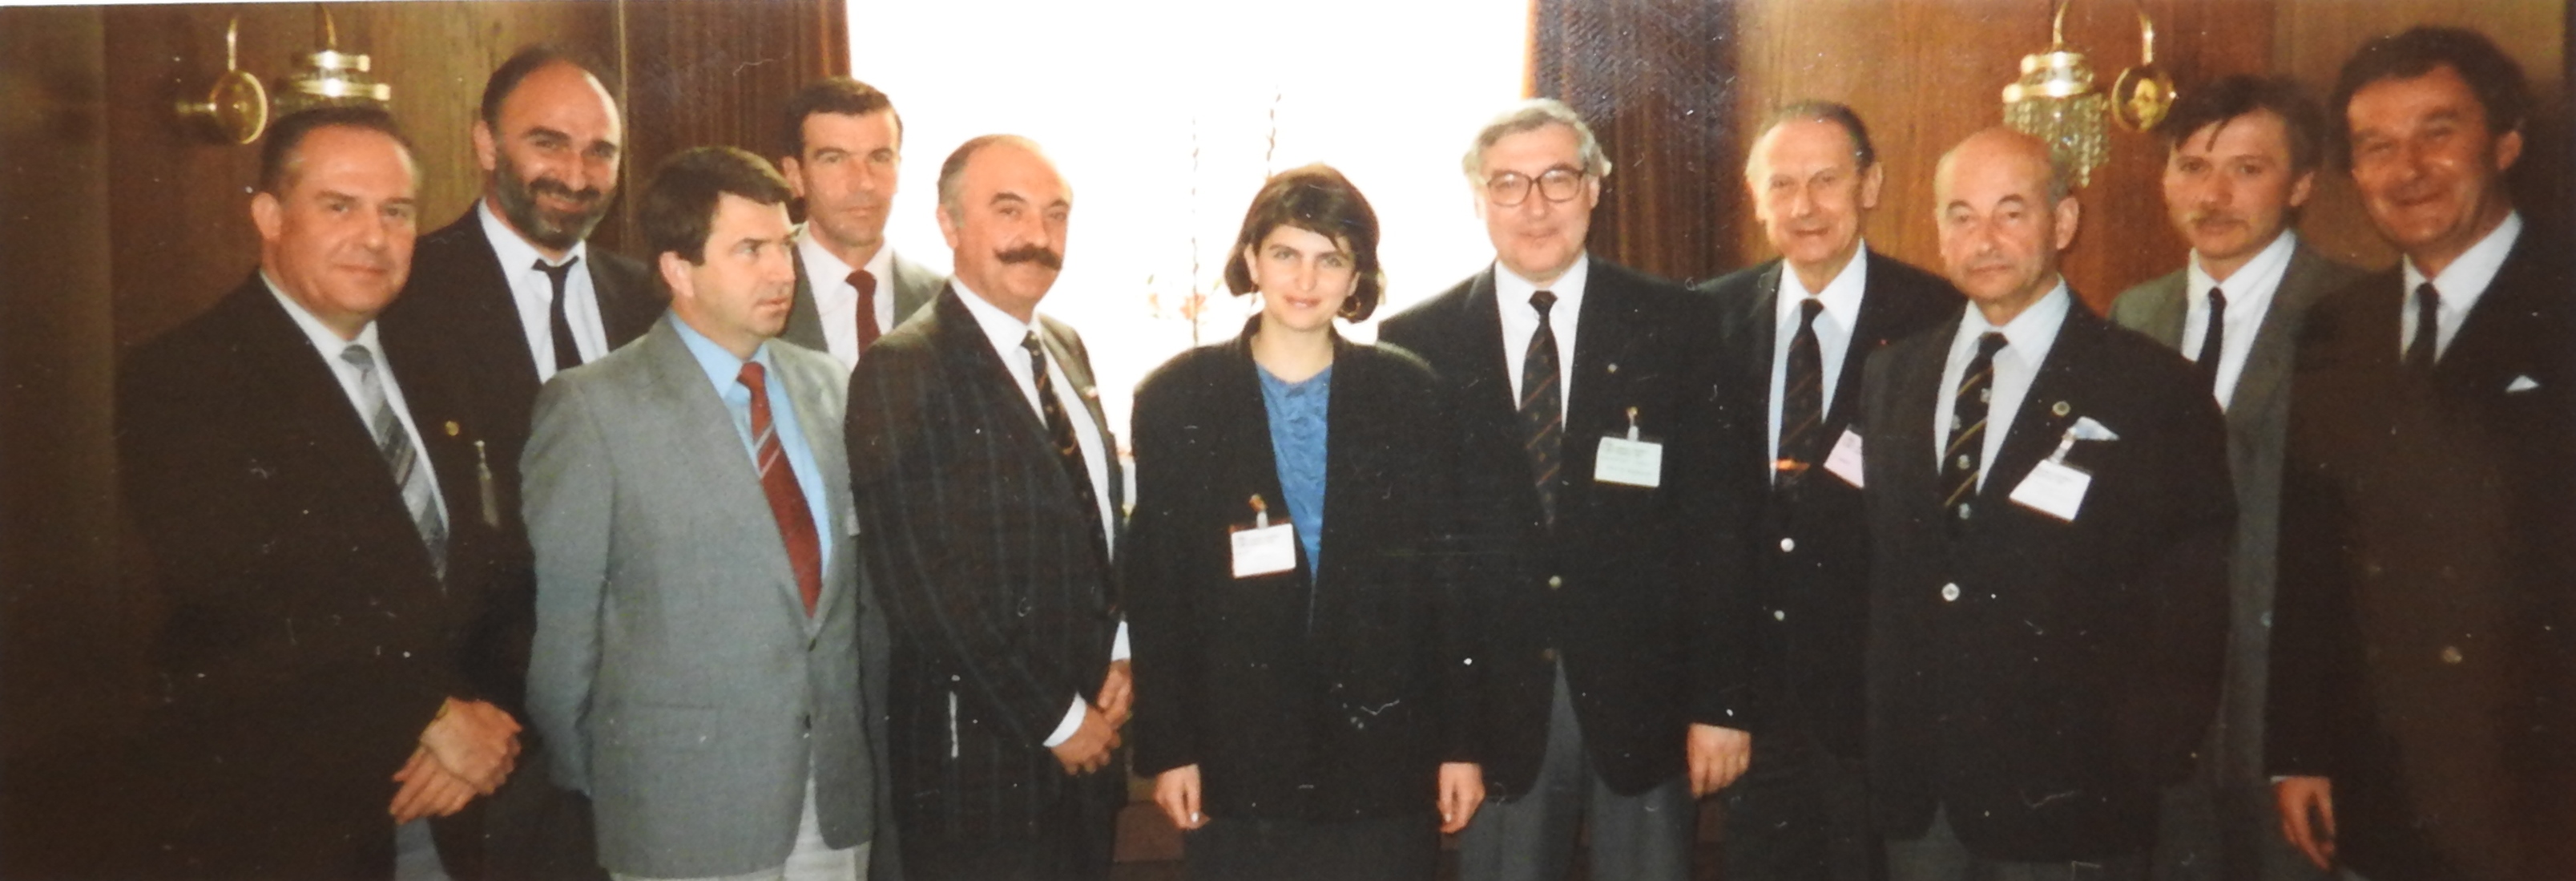 FEI-Versammlung mit den osteuropäischen FN-Vertretern vom März 1989 in Budapest. Die DDR-Delegation bestand aus Prof. Dr. Flade (l.) und Detlef Kröber (3.v.l.). In der Mitte Weltcup-Direktor Max Ammann. Foto: FEI/Ammann